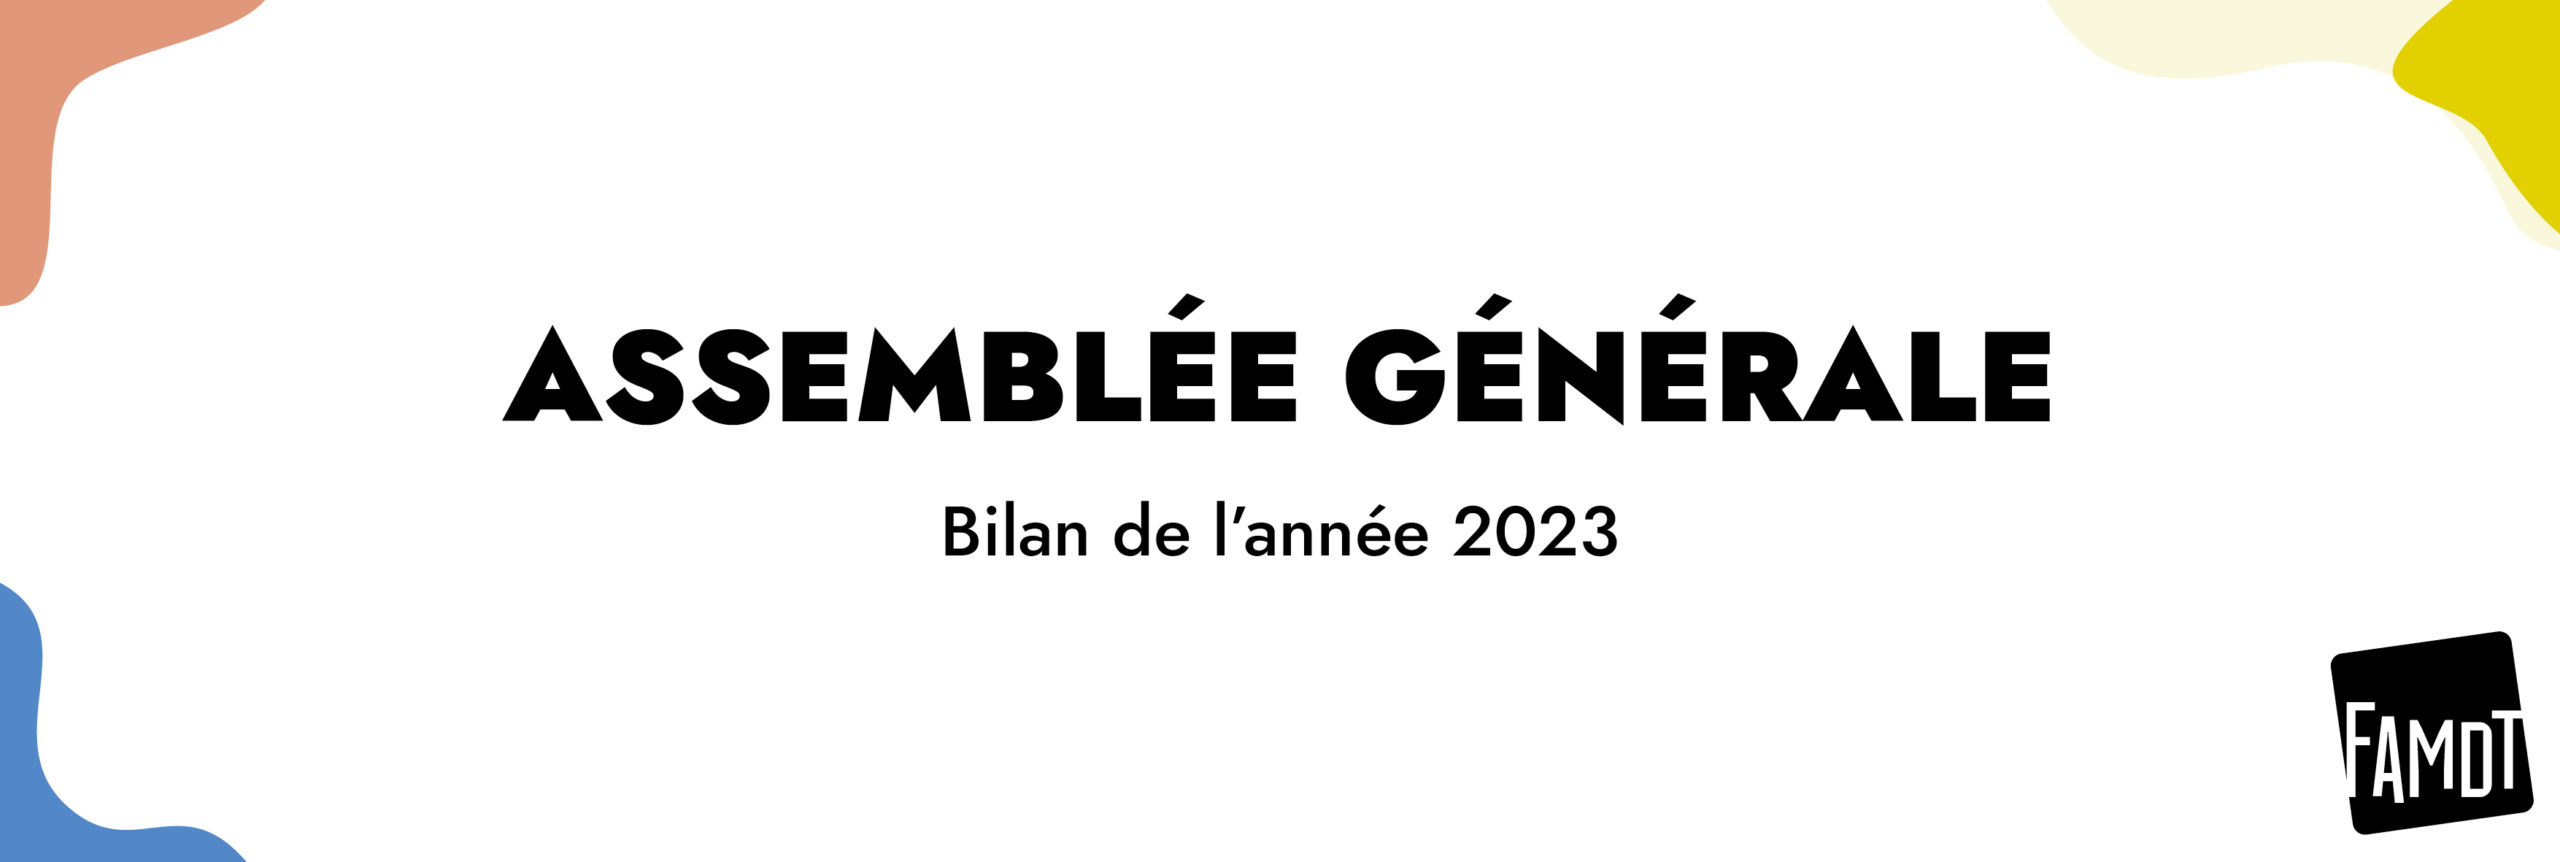 You are currently viewing Assemblée générale de la FAMDT